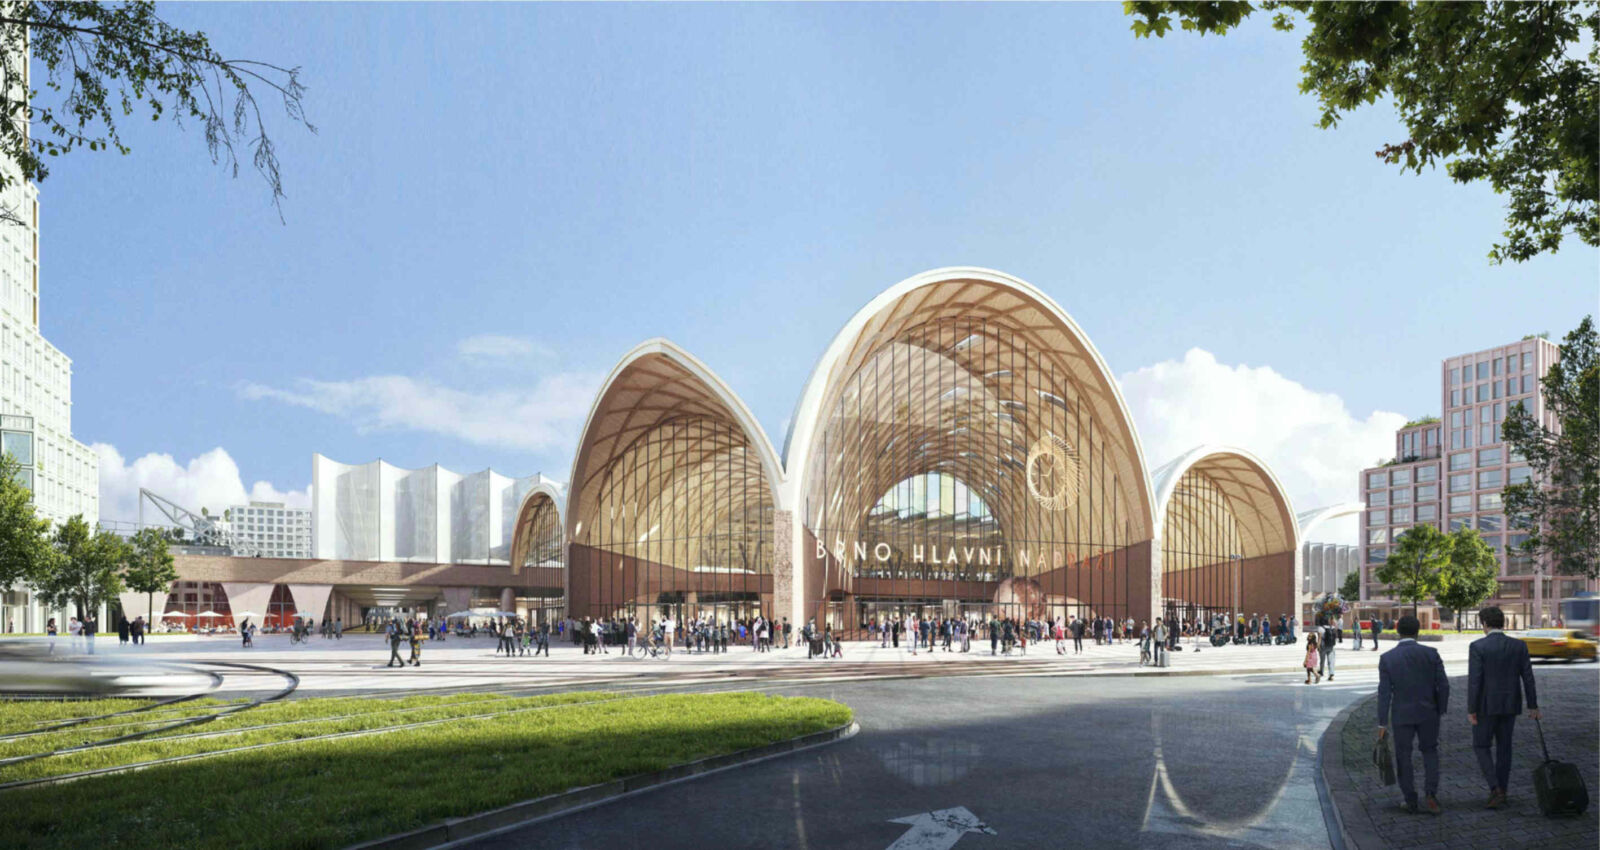 Vítězný návrh nové podoby brněnského hlavního nádraží